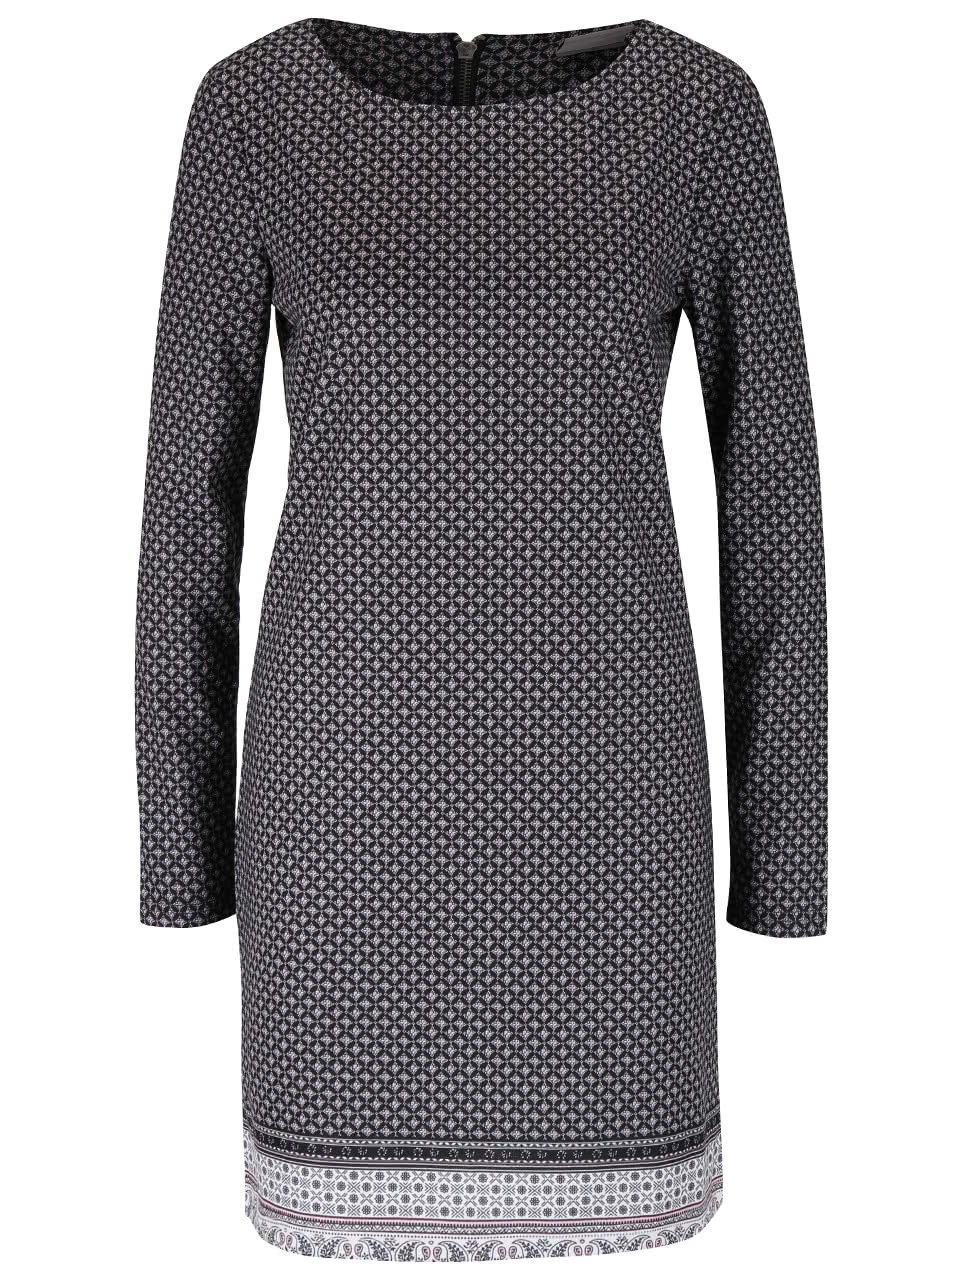 Krémovo-černé vzorované šaty Vero Moda Emma